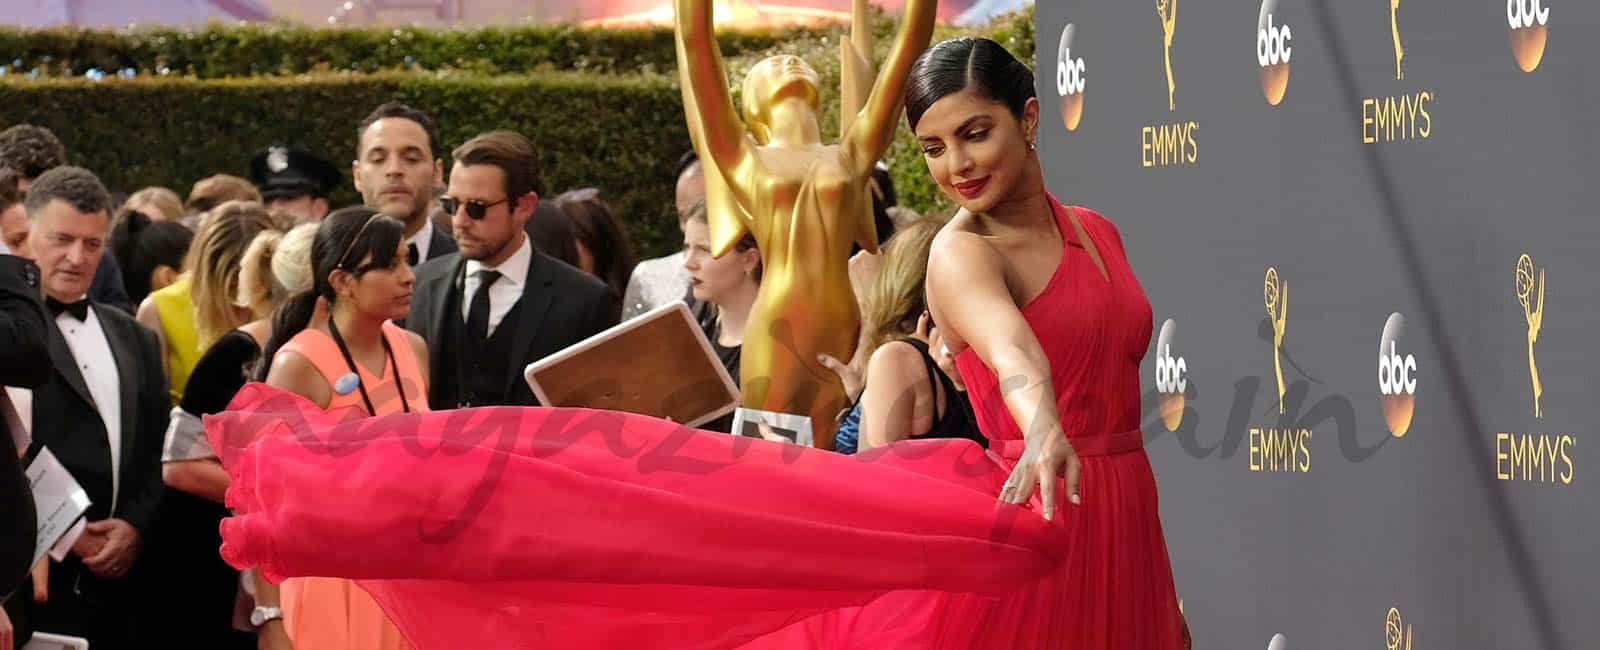 Premios Emmy 2016: Los mejores looks de la alfombra roja